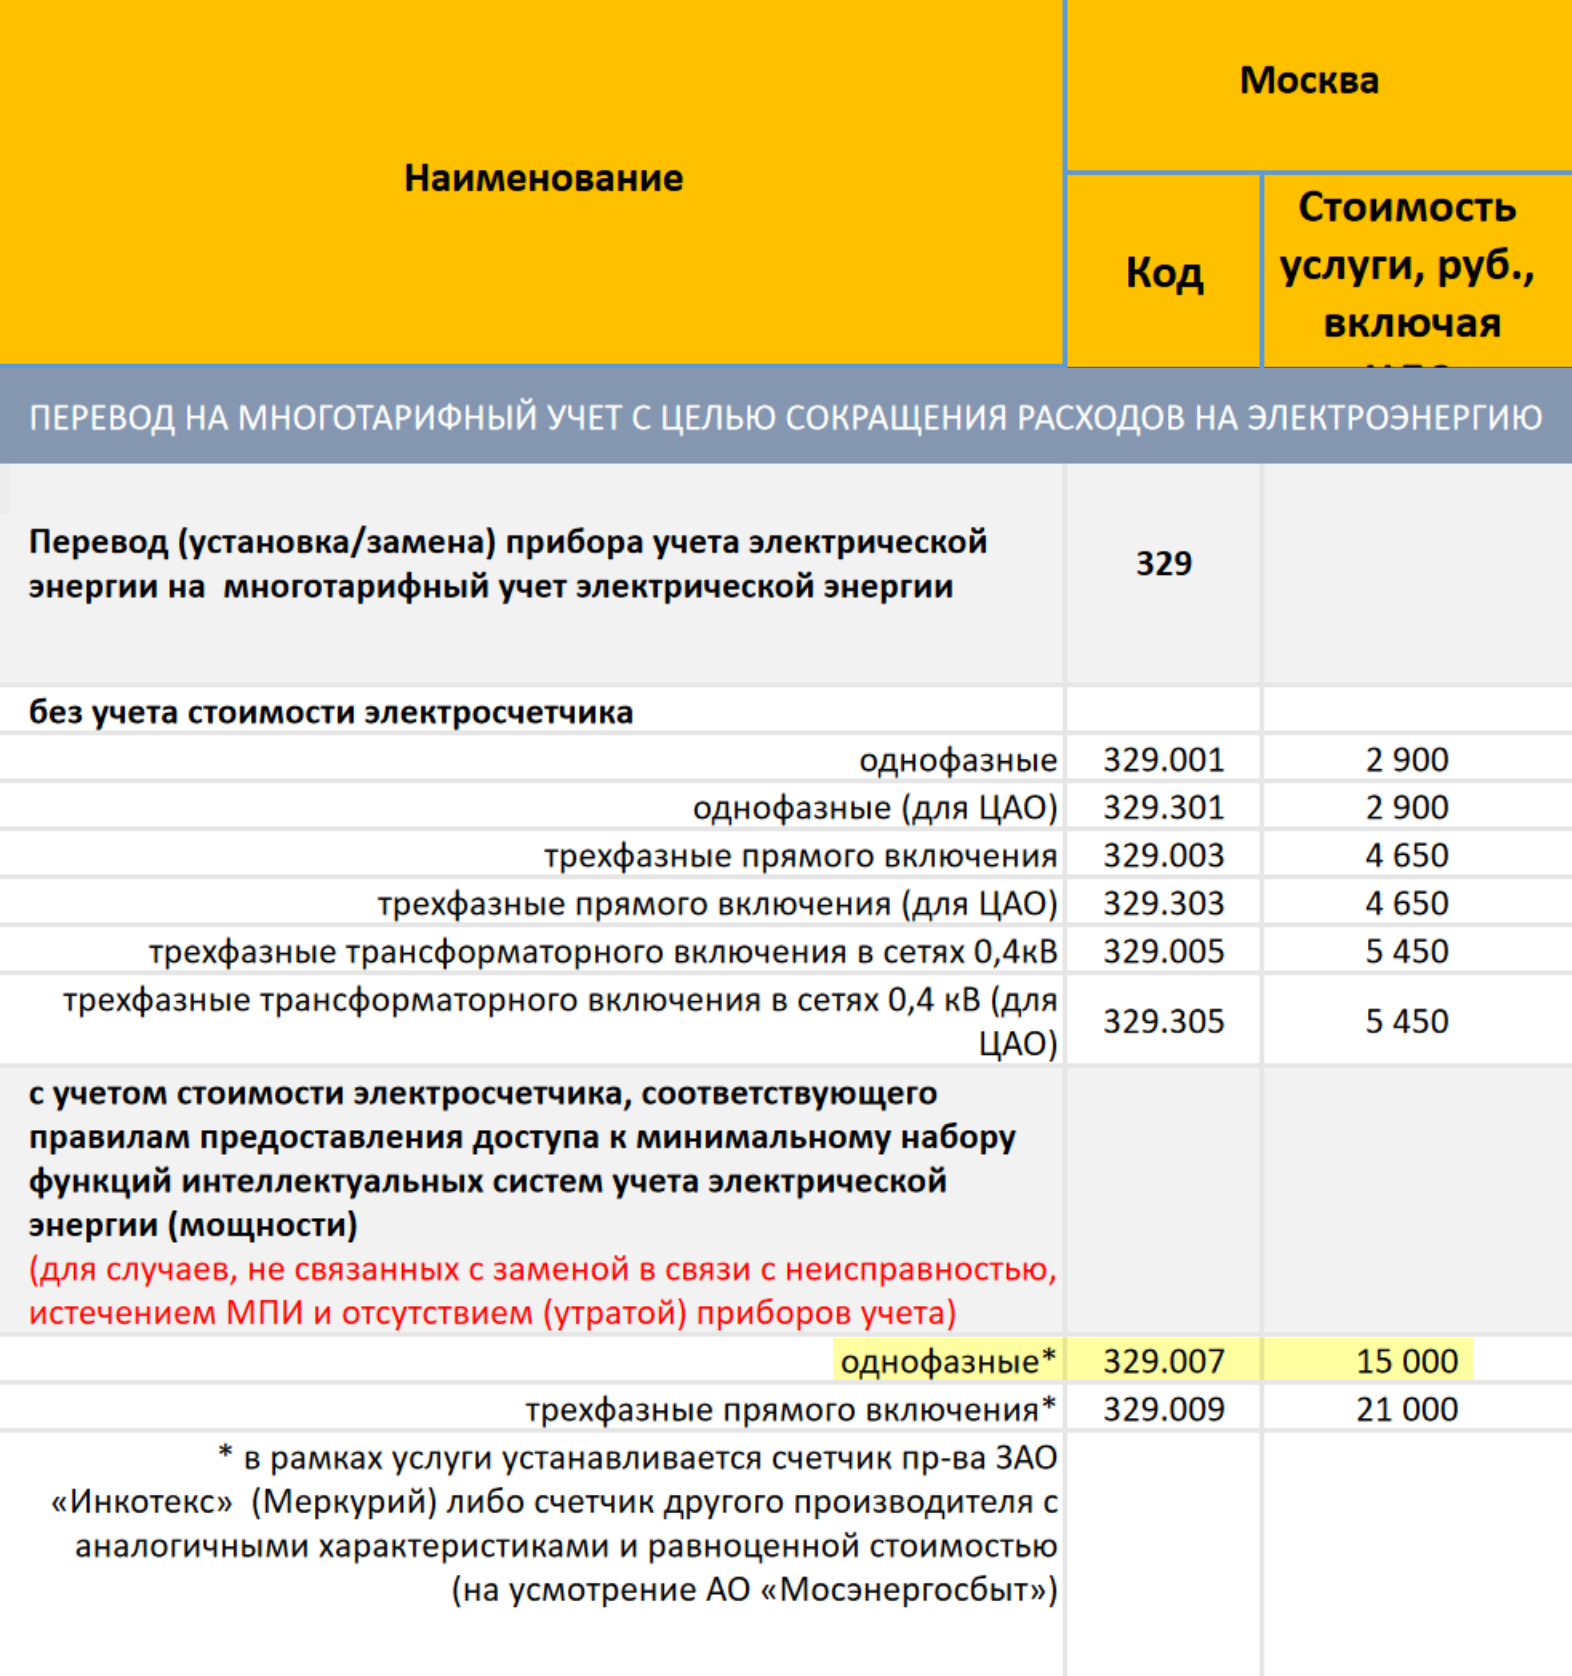 Стоимость замены прибора учета в Москве, например, составляет 15 000 ₽. В эту сумму уже входит цена счетчика. Источник: mosenergosbyt.ru